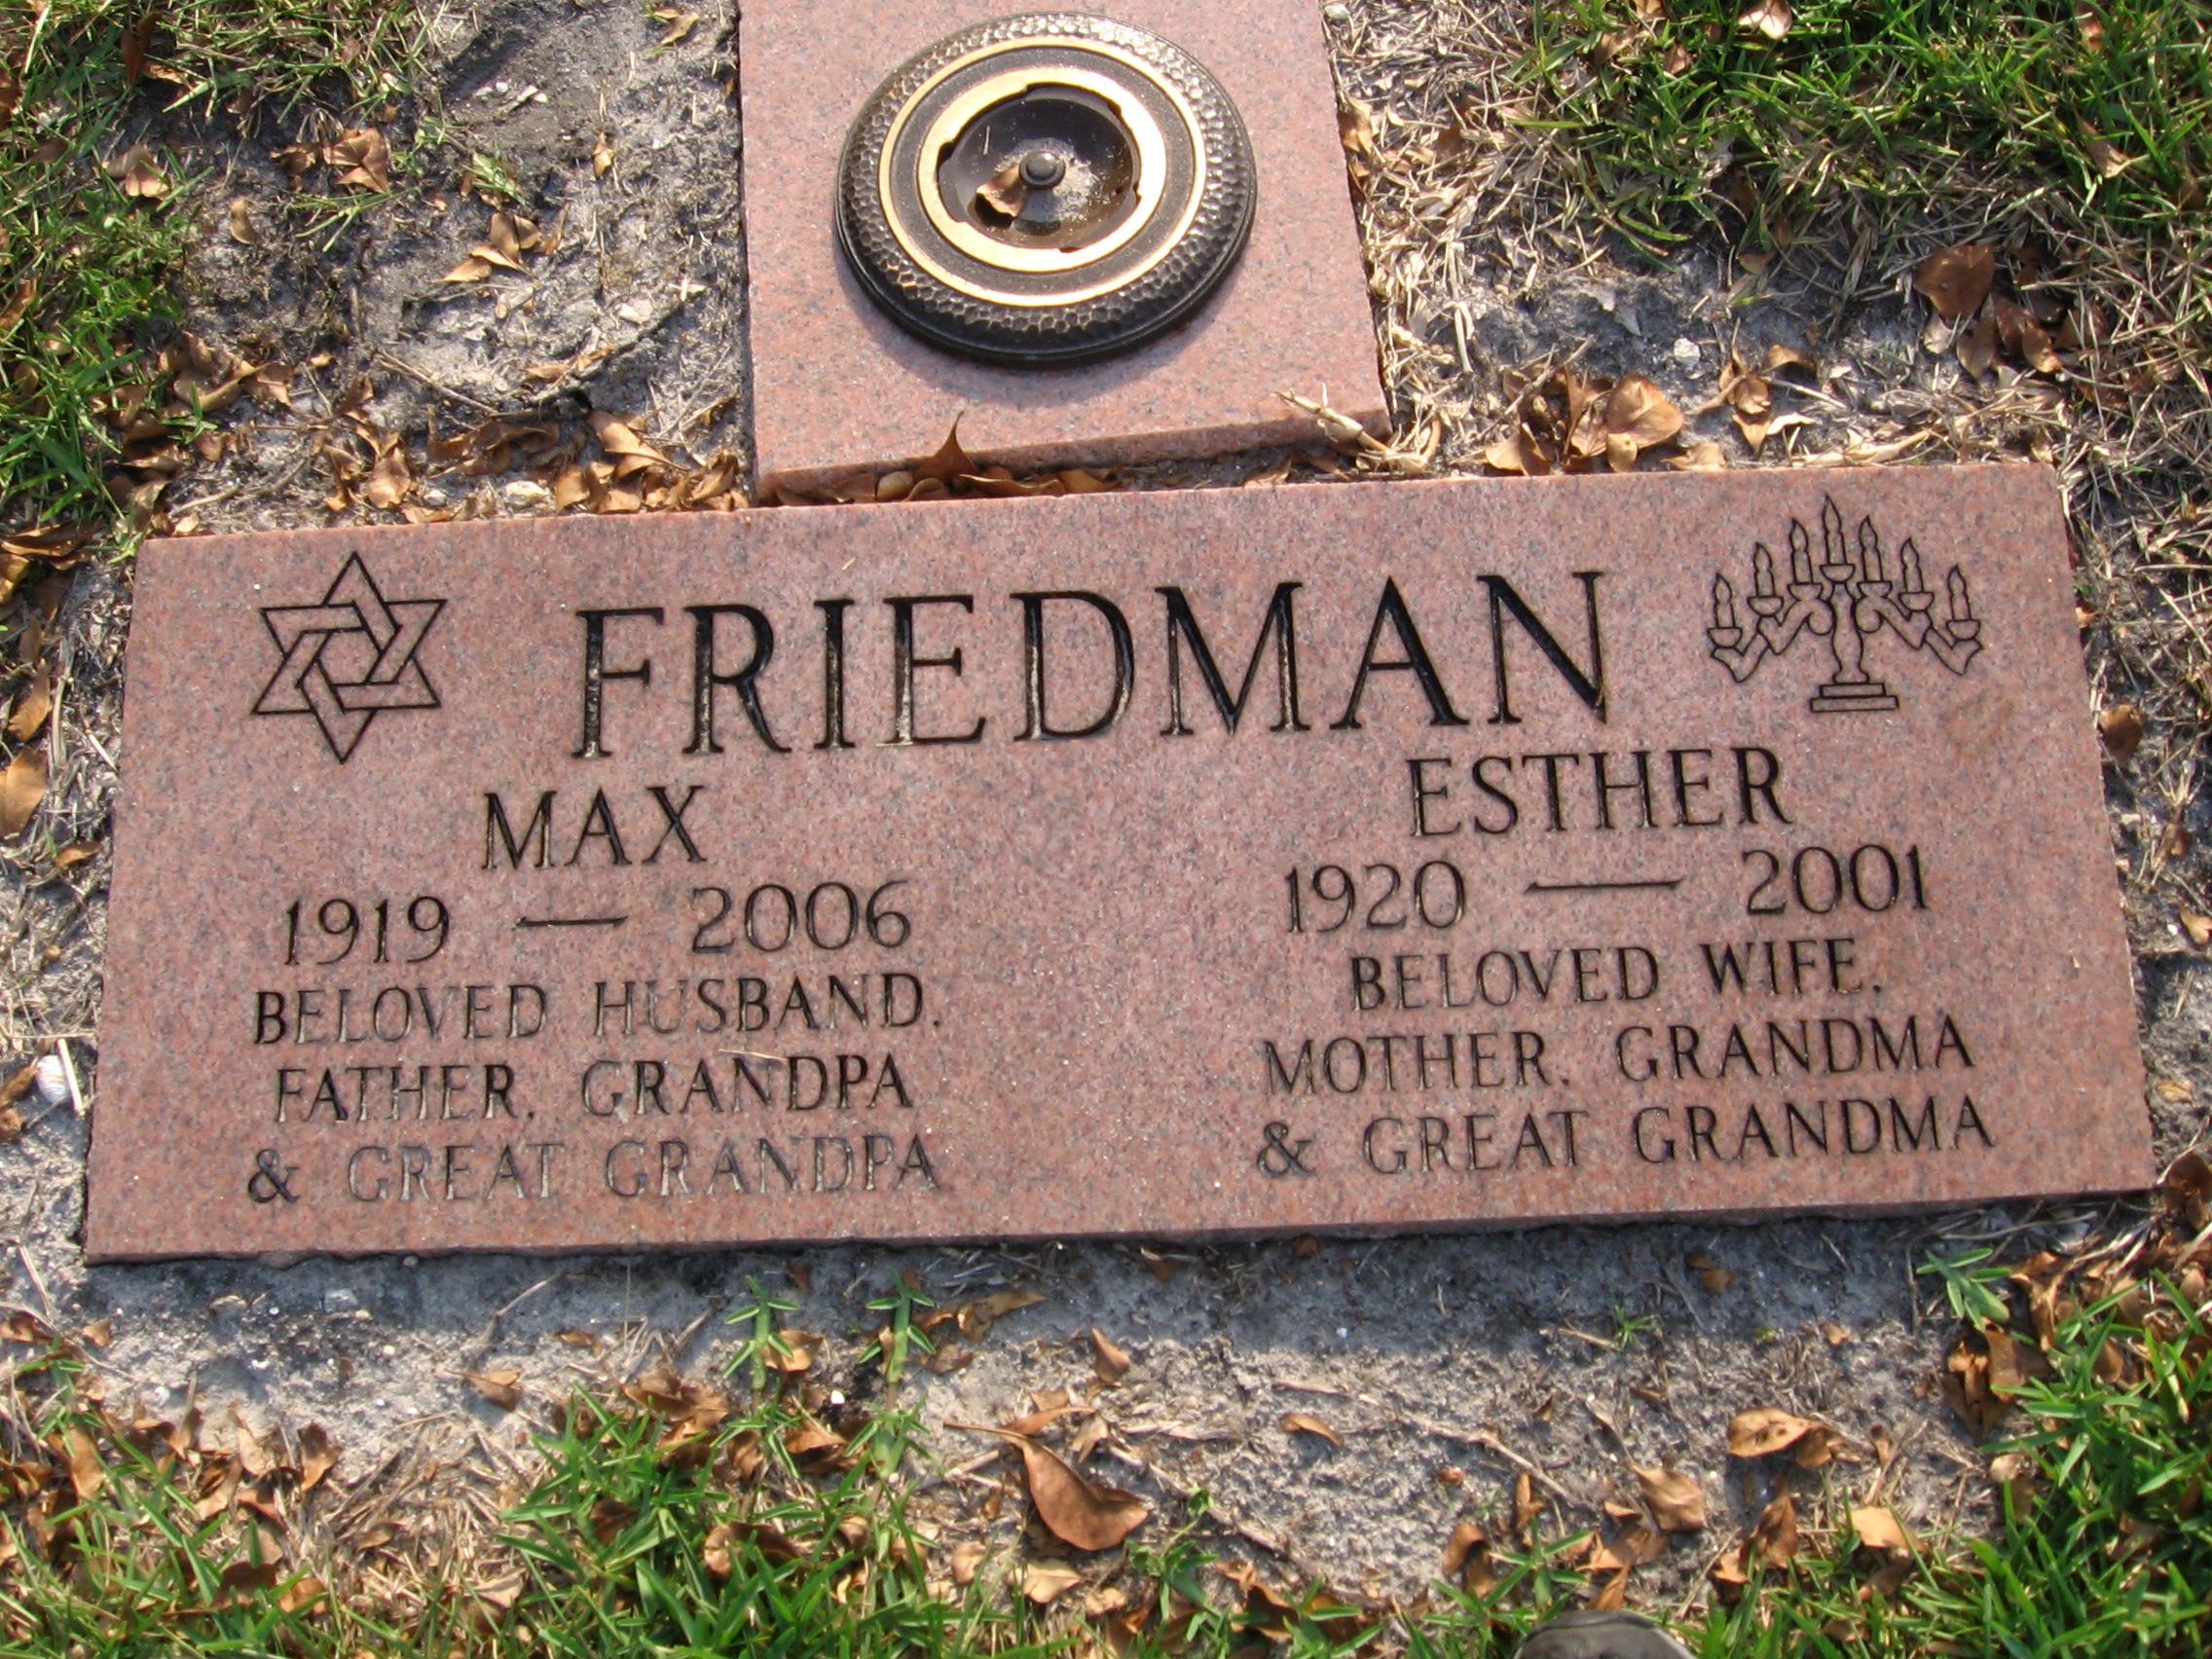 Max Friedman